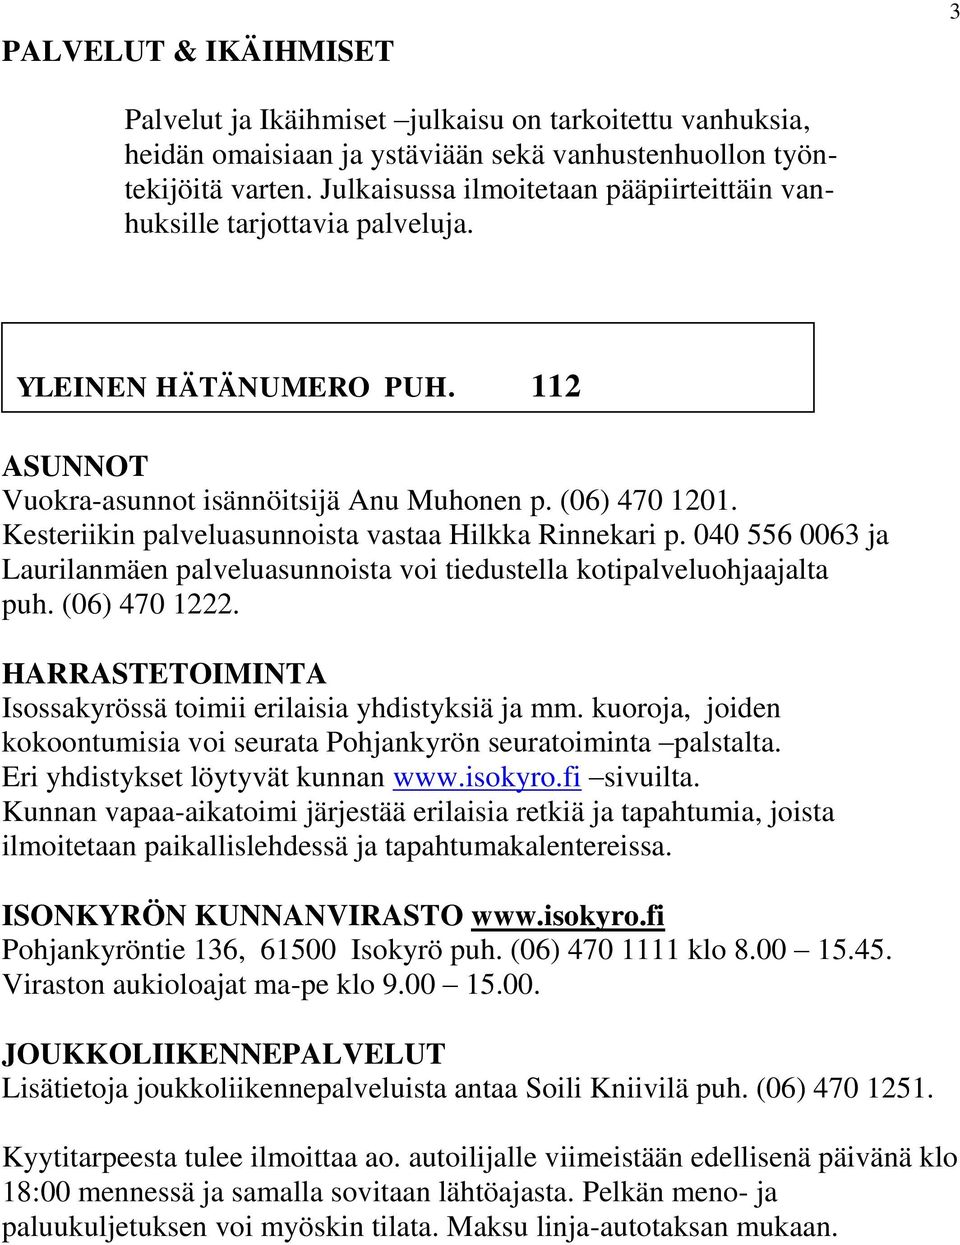 Kesteriikin palveluasunnoista vastaa Hilkka Rinnekari p. 040 556 0063 ja Laurilanmäen palveluasunnoista voi tiedustella kotipalveluohjaajalta puh. (06) 470 1222.